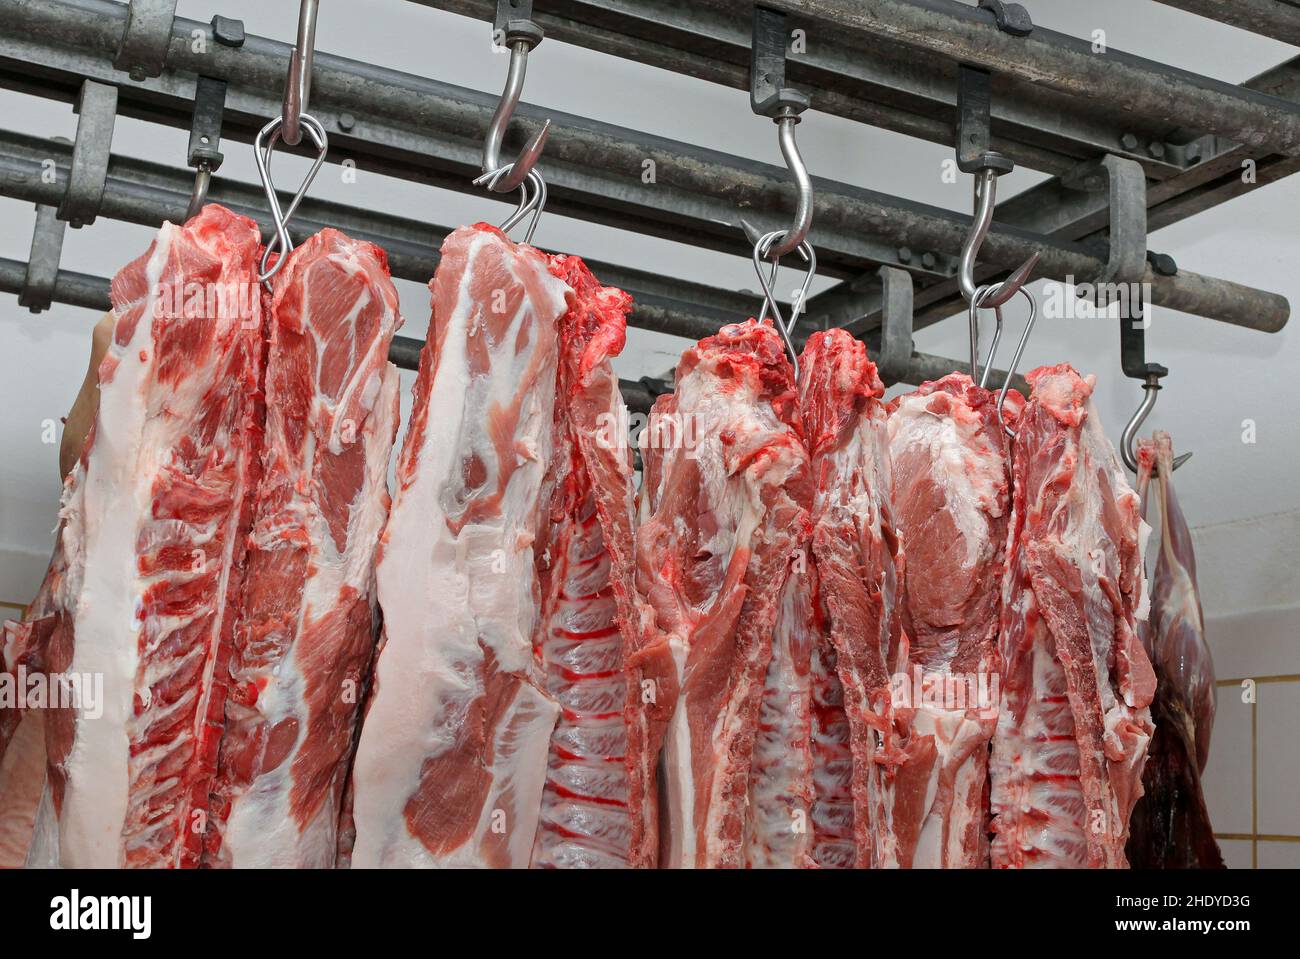 meat hook, meat hooks Stock Photo